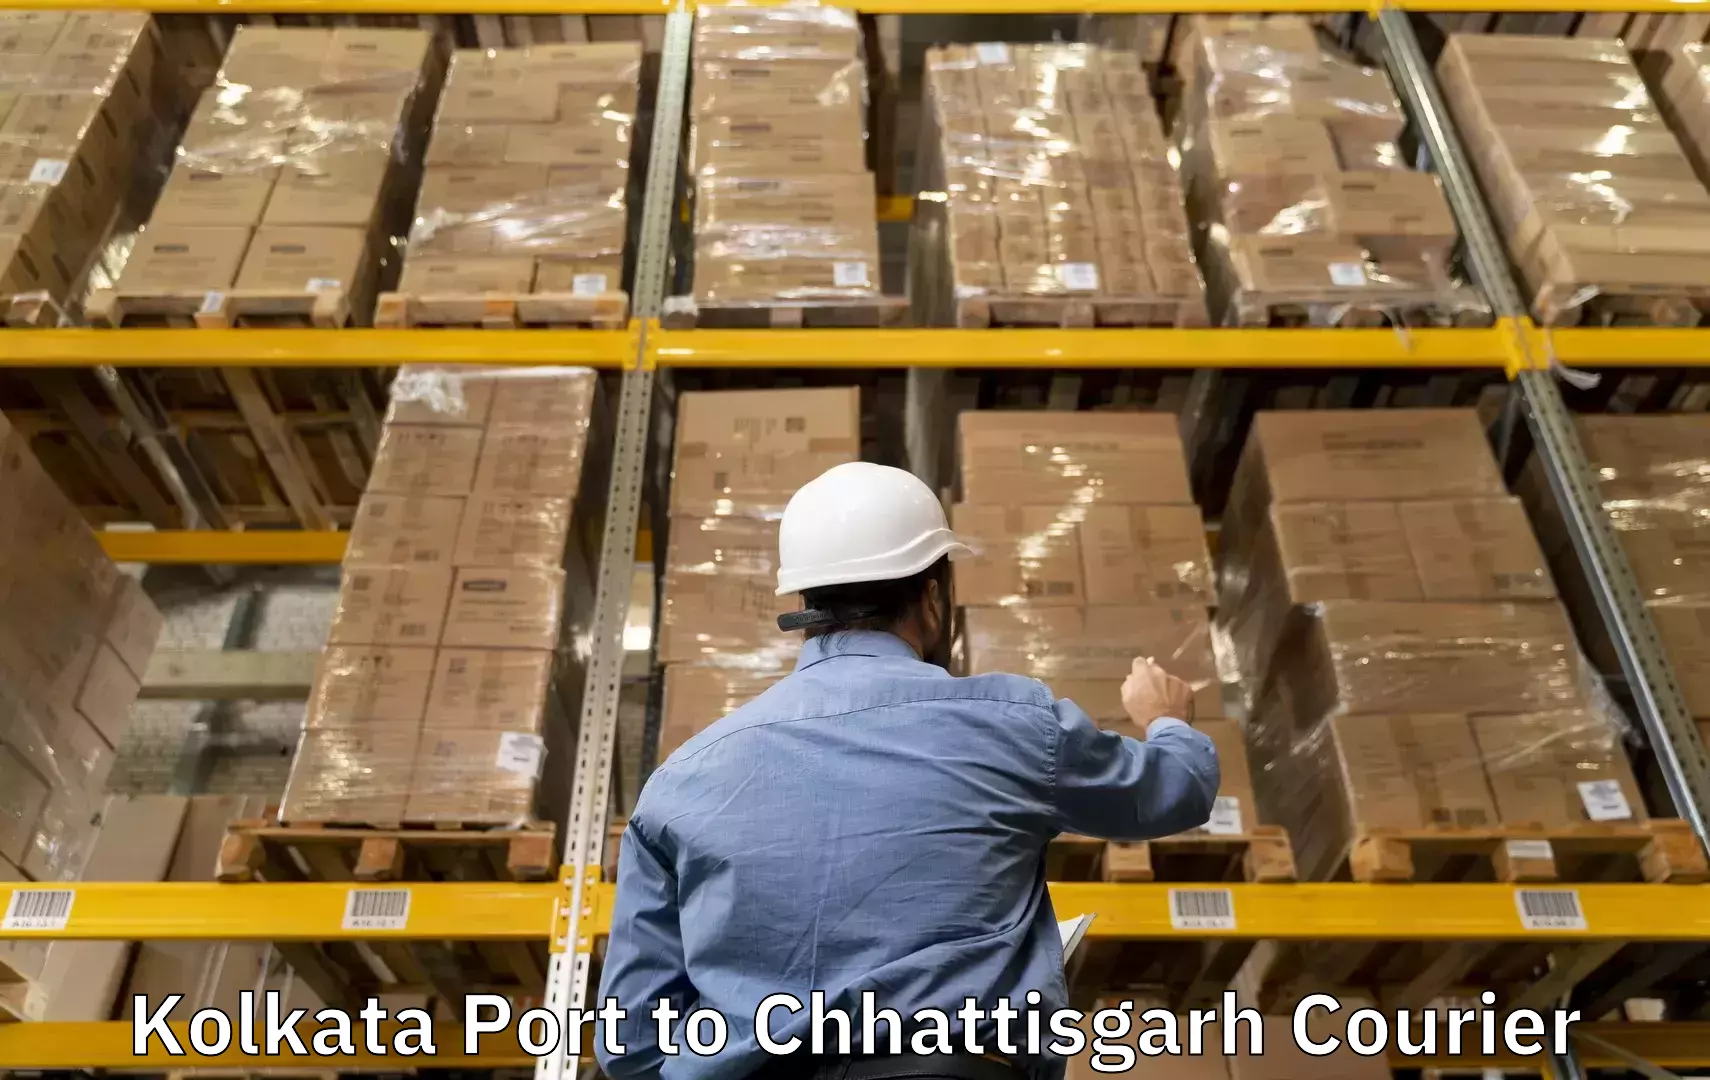 Baggage shipping service Kolkata Port to Bemetara